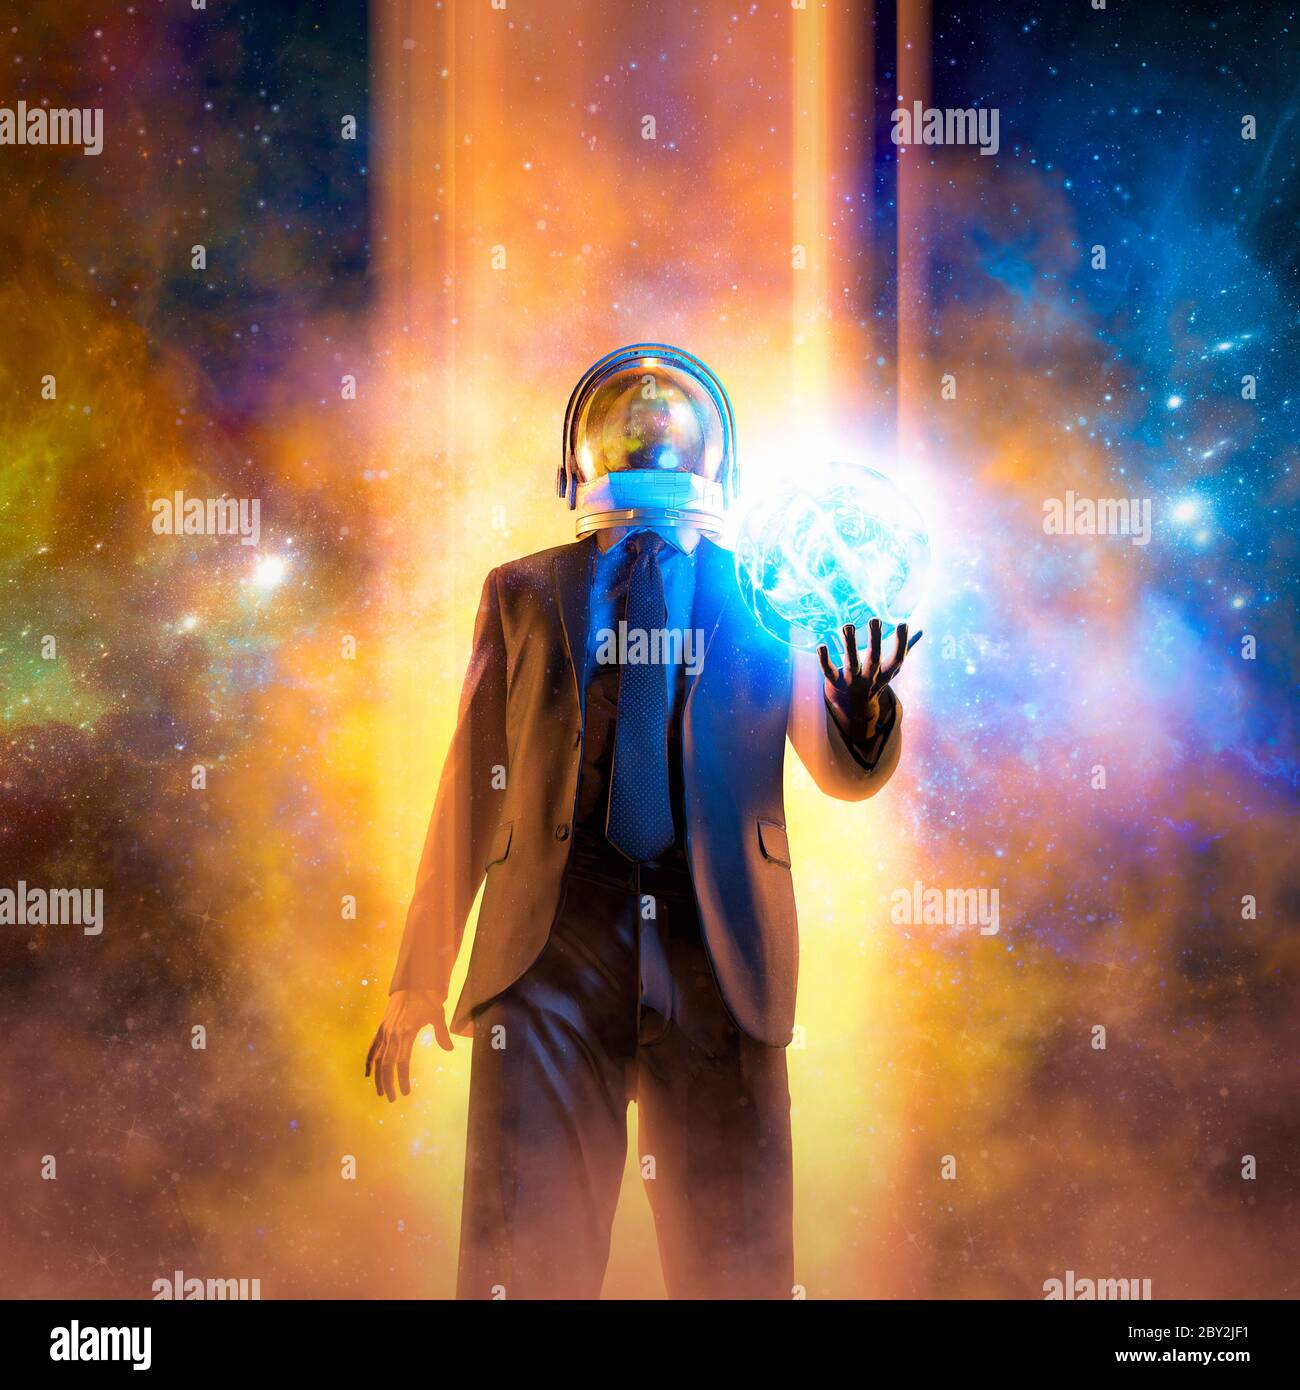 Nuit du magicien / illustration 3D de la figure masculine adaptée avec casque d'astronaute, qui évoque une boule d'énergie lumineuse dans l'espace Banque D'Images